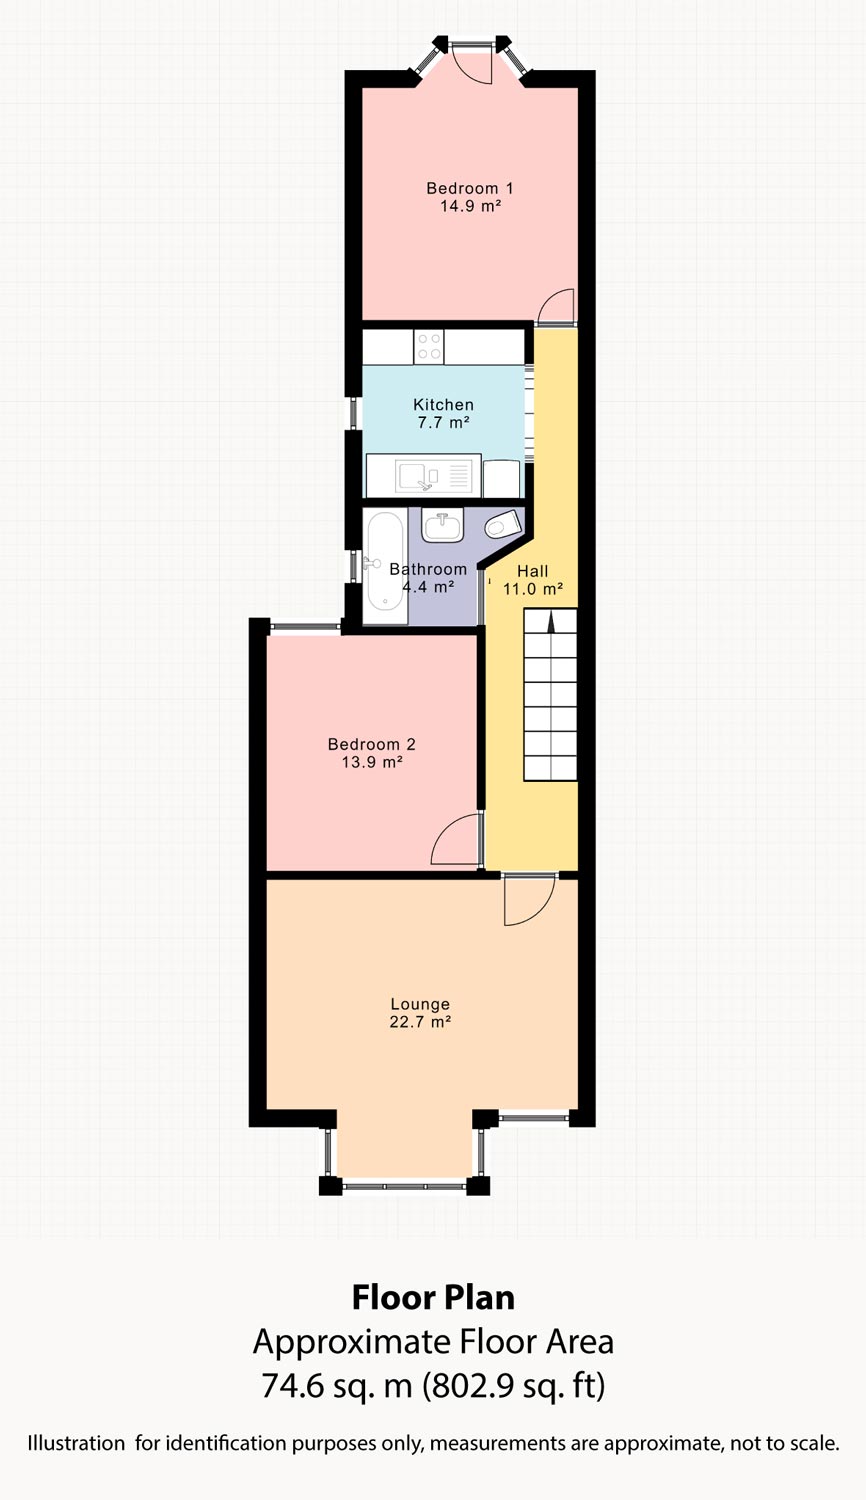 Floorplan Sample Image